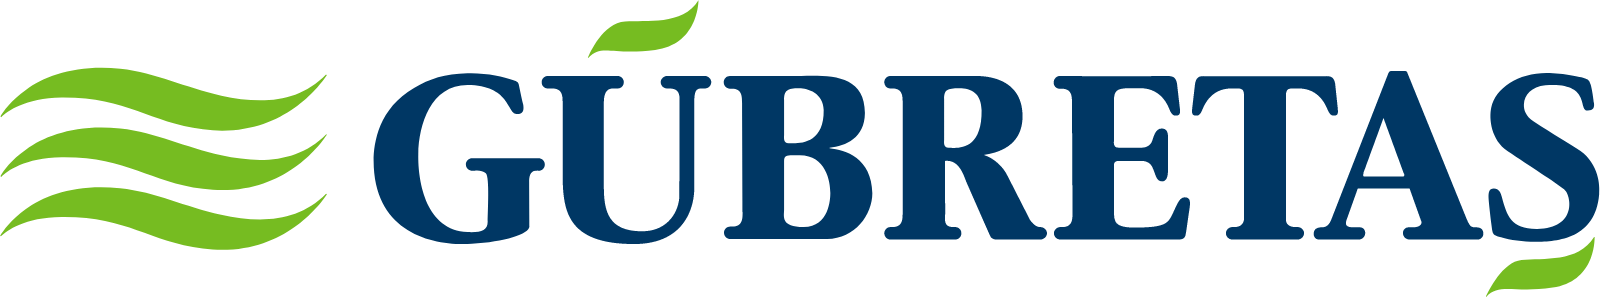 GÜBRETAŞ logo large (transparent PNG)